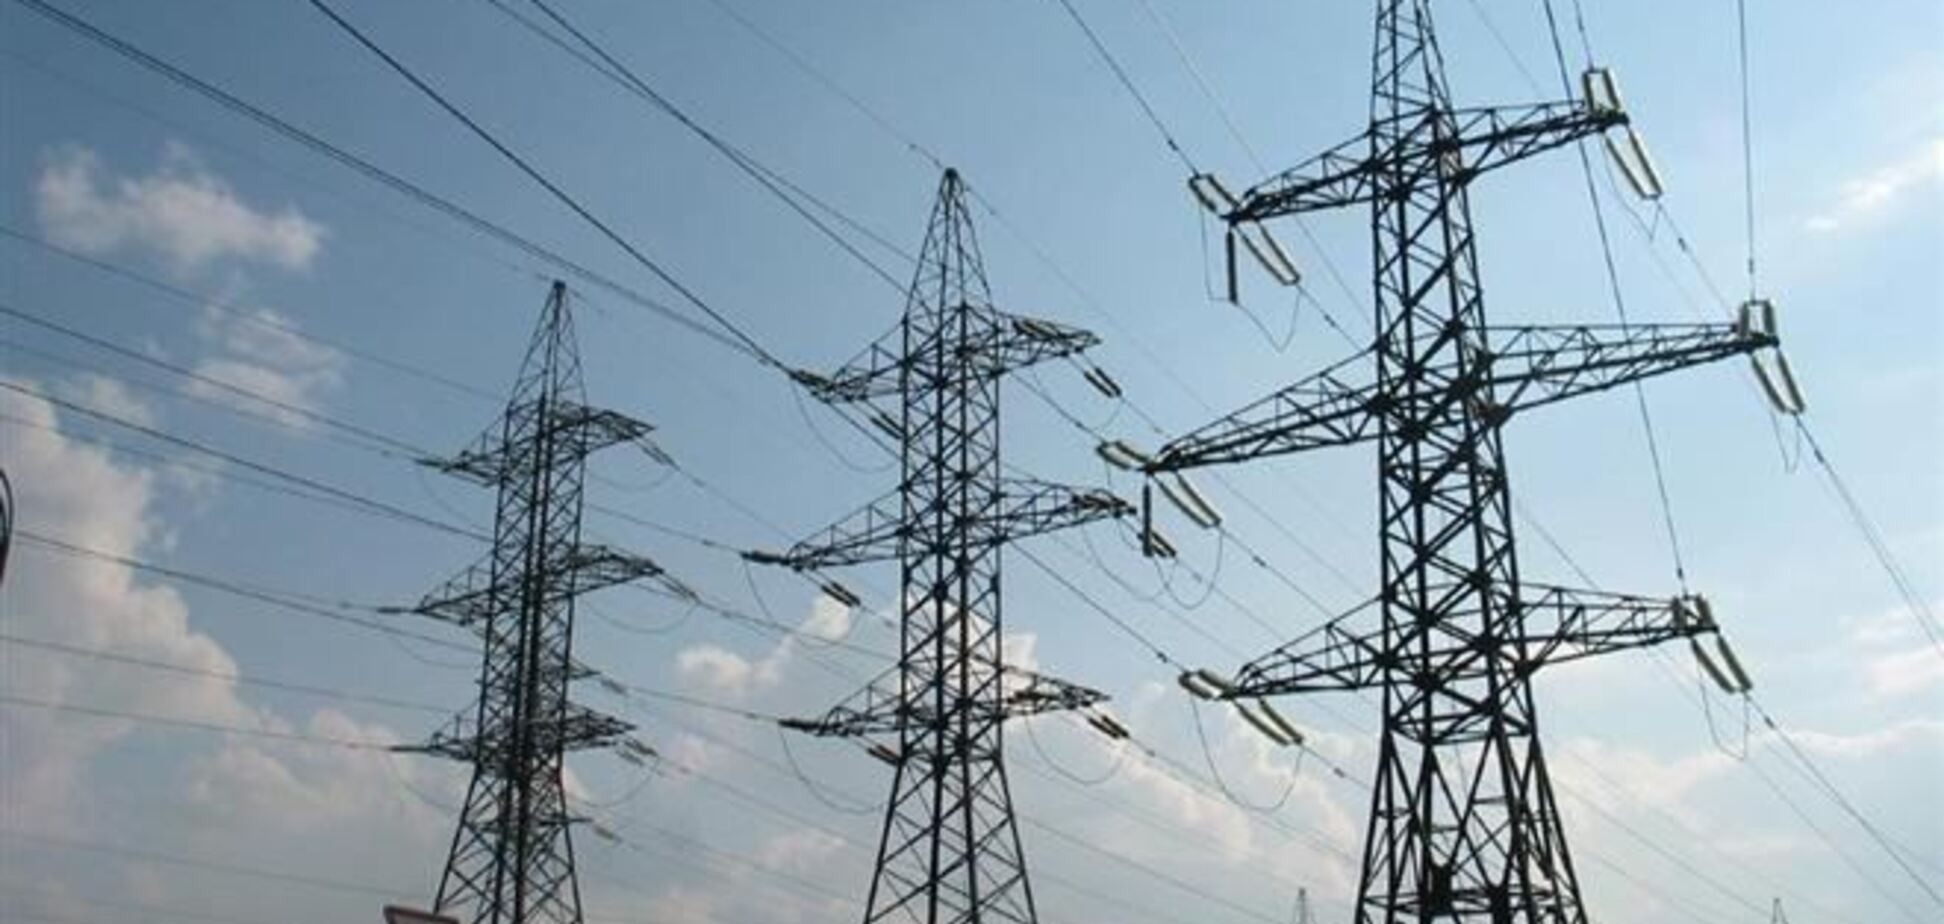 РФ начала переговоры с Украиной о закупке электричества для Крыма по $85-90 за МВт